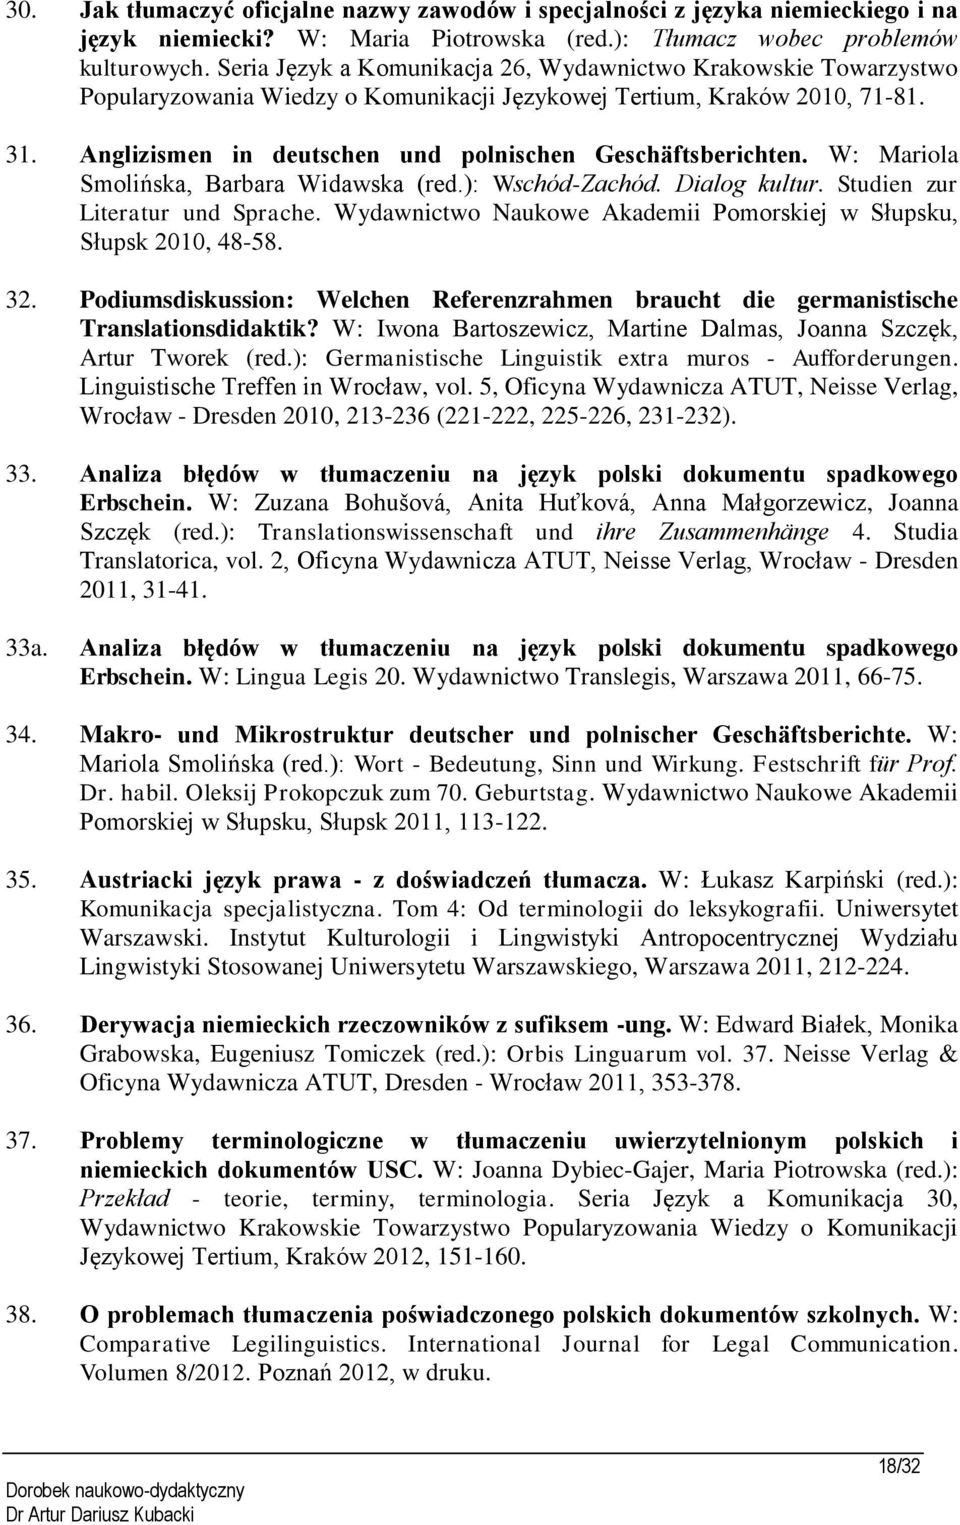 Anglizismen in deutschen und polnischen Geschäftsberichten. W: Mariola Smolińska, Barbara Widawska (red.): Wschód-Zachód. Dialog kultur. Studien zur Literatur und Sprache.